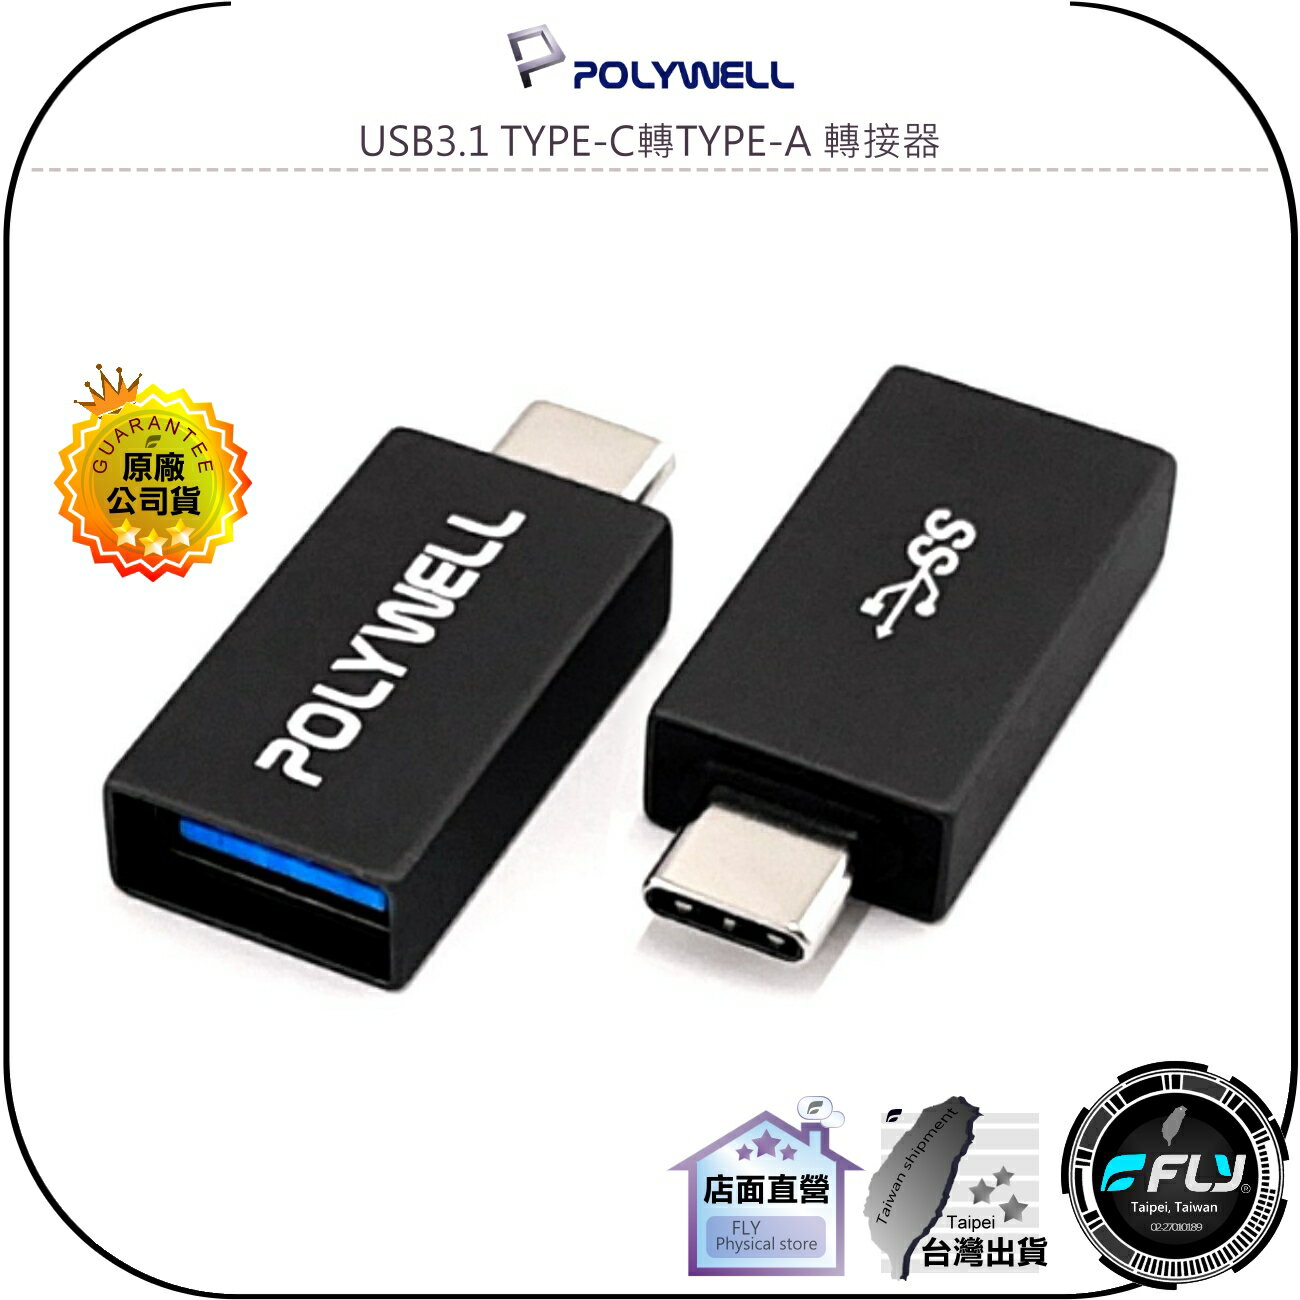 【飛翔商城】POLYWELL 寶利威爾 USB3.1 TYPE-C轉TYPE-A 轉接器◉公司貨◉USB-C轉換器